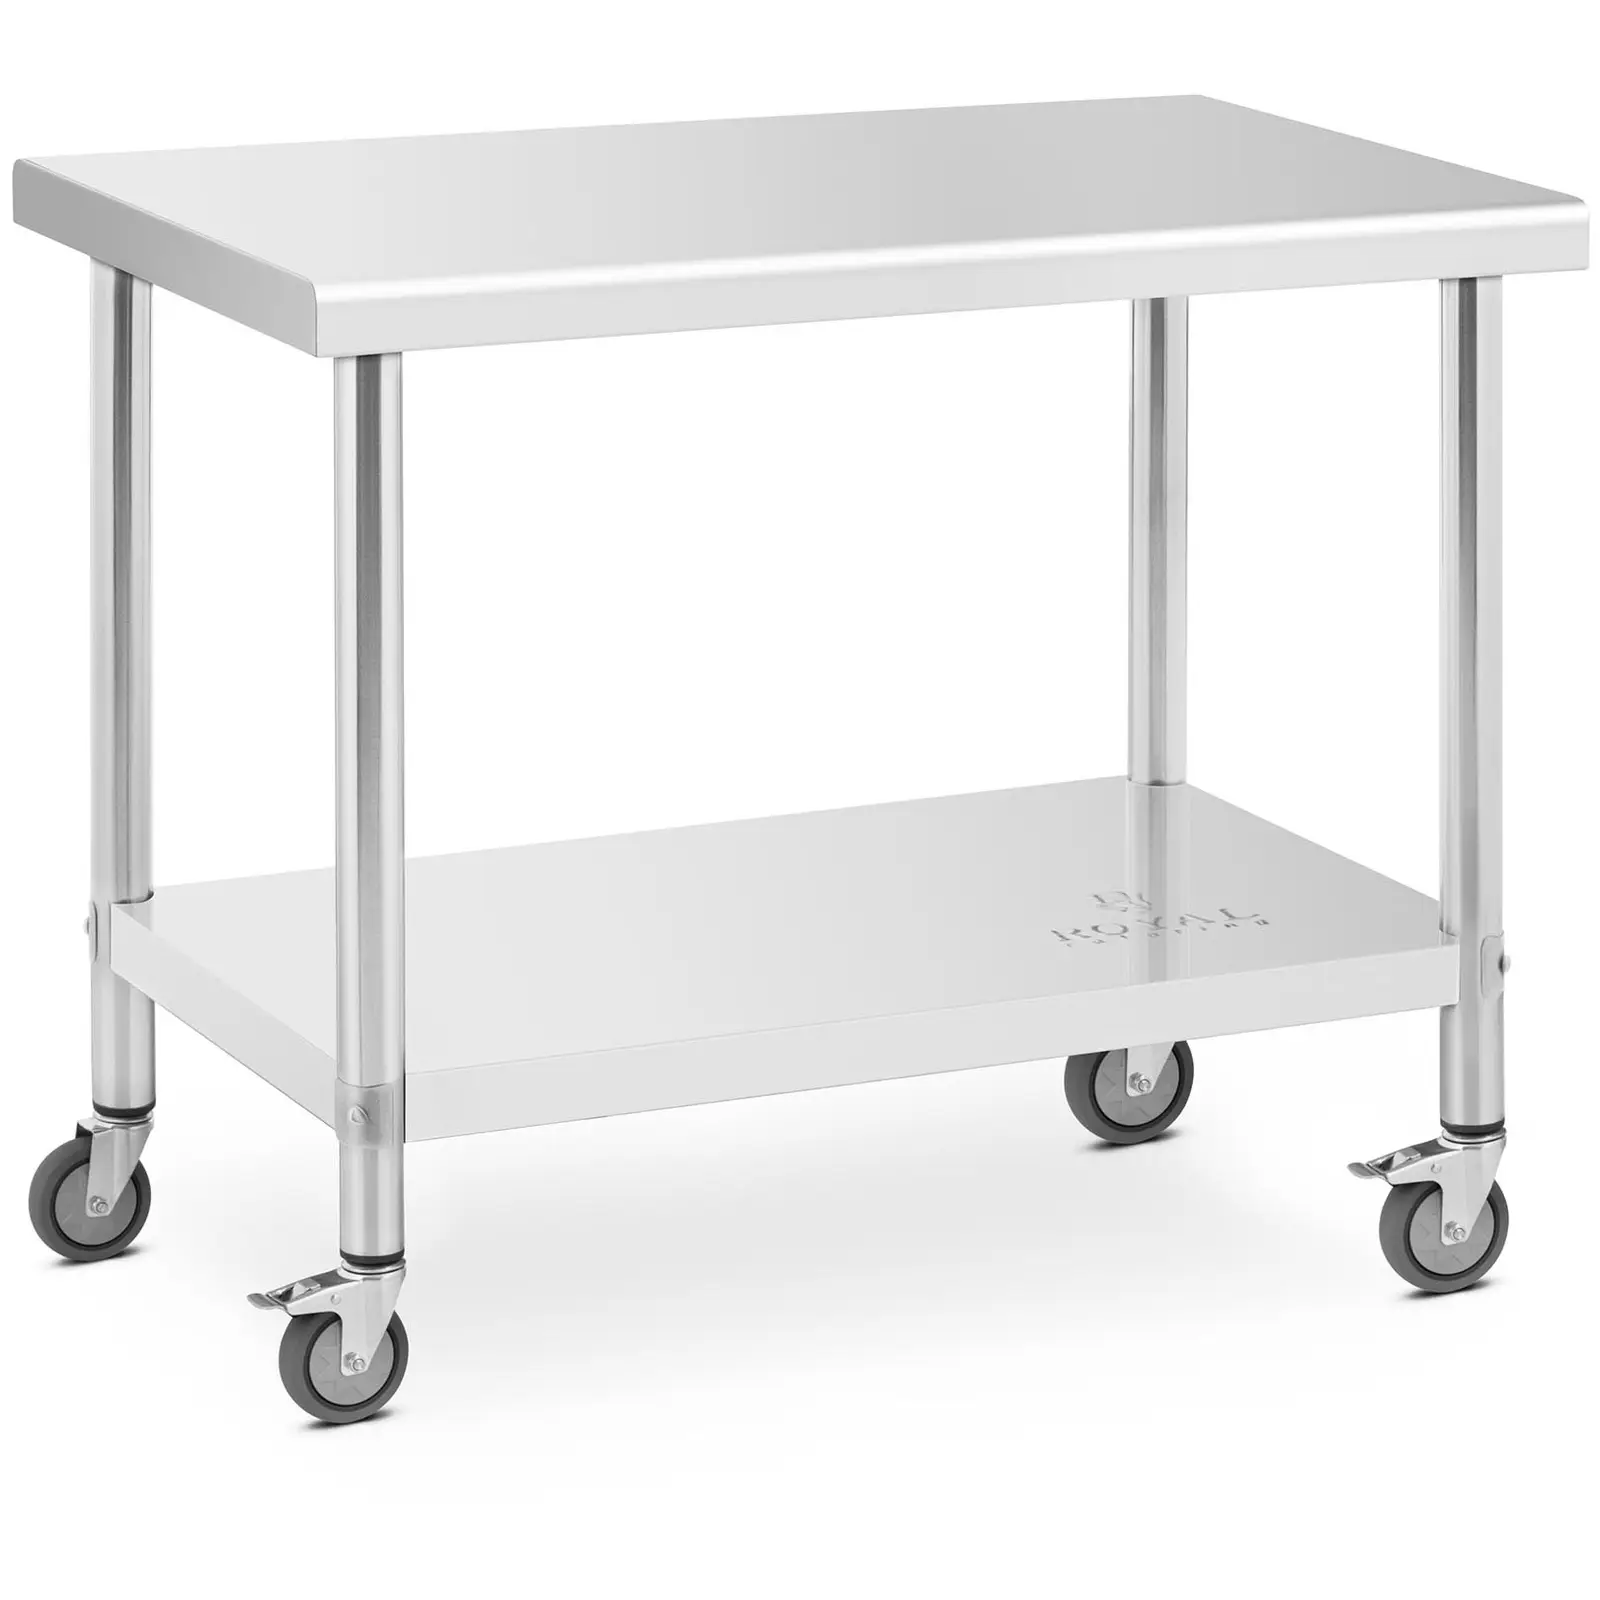 Stůl z ušlechtilé oceli s kolečky 60 x 100 cm nosnost 155 kg - Pracovní stoly Royal Catering